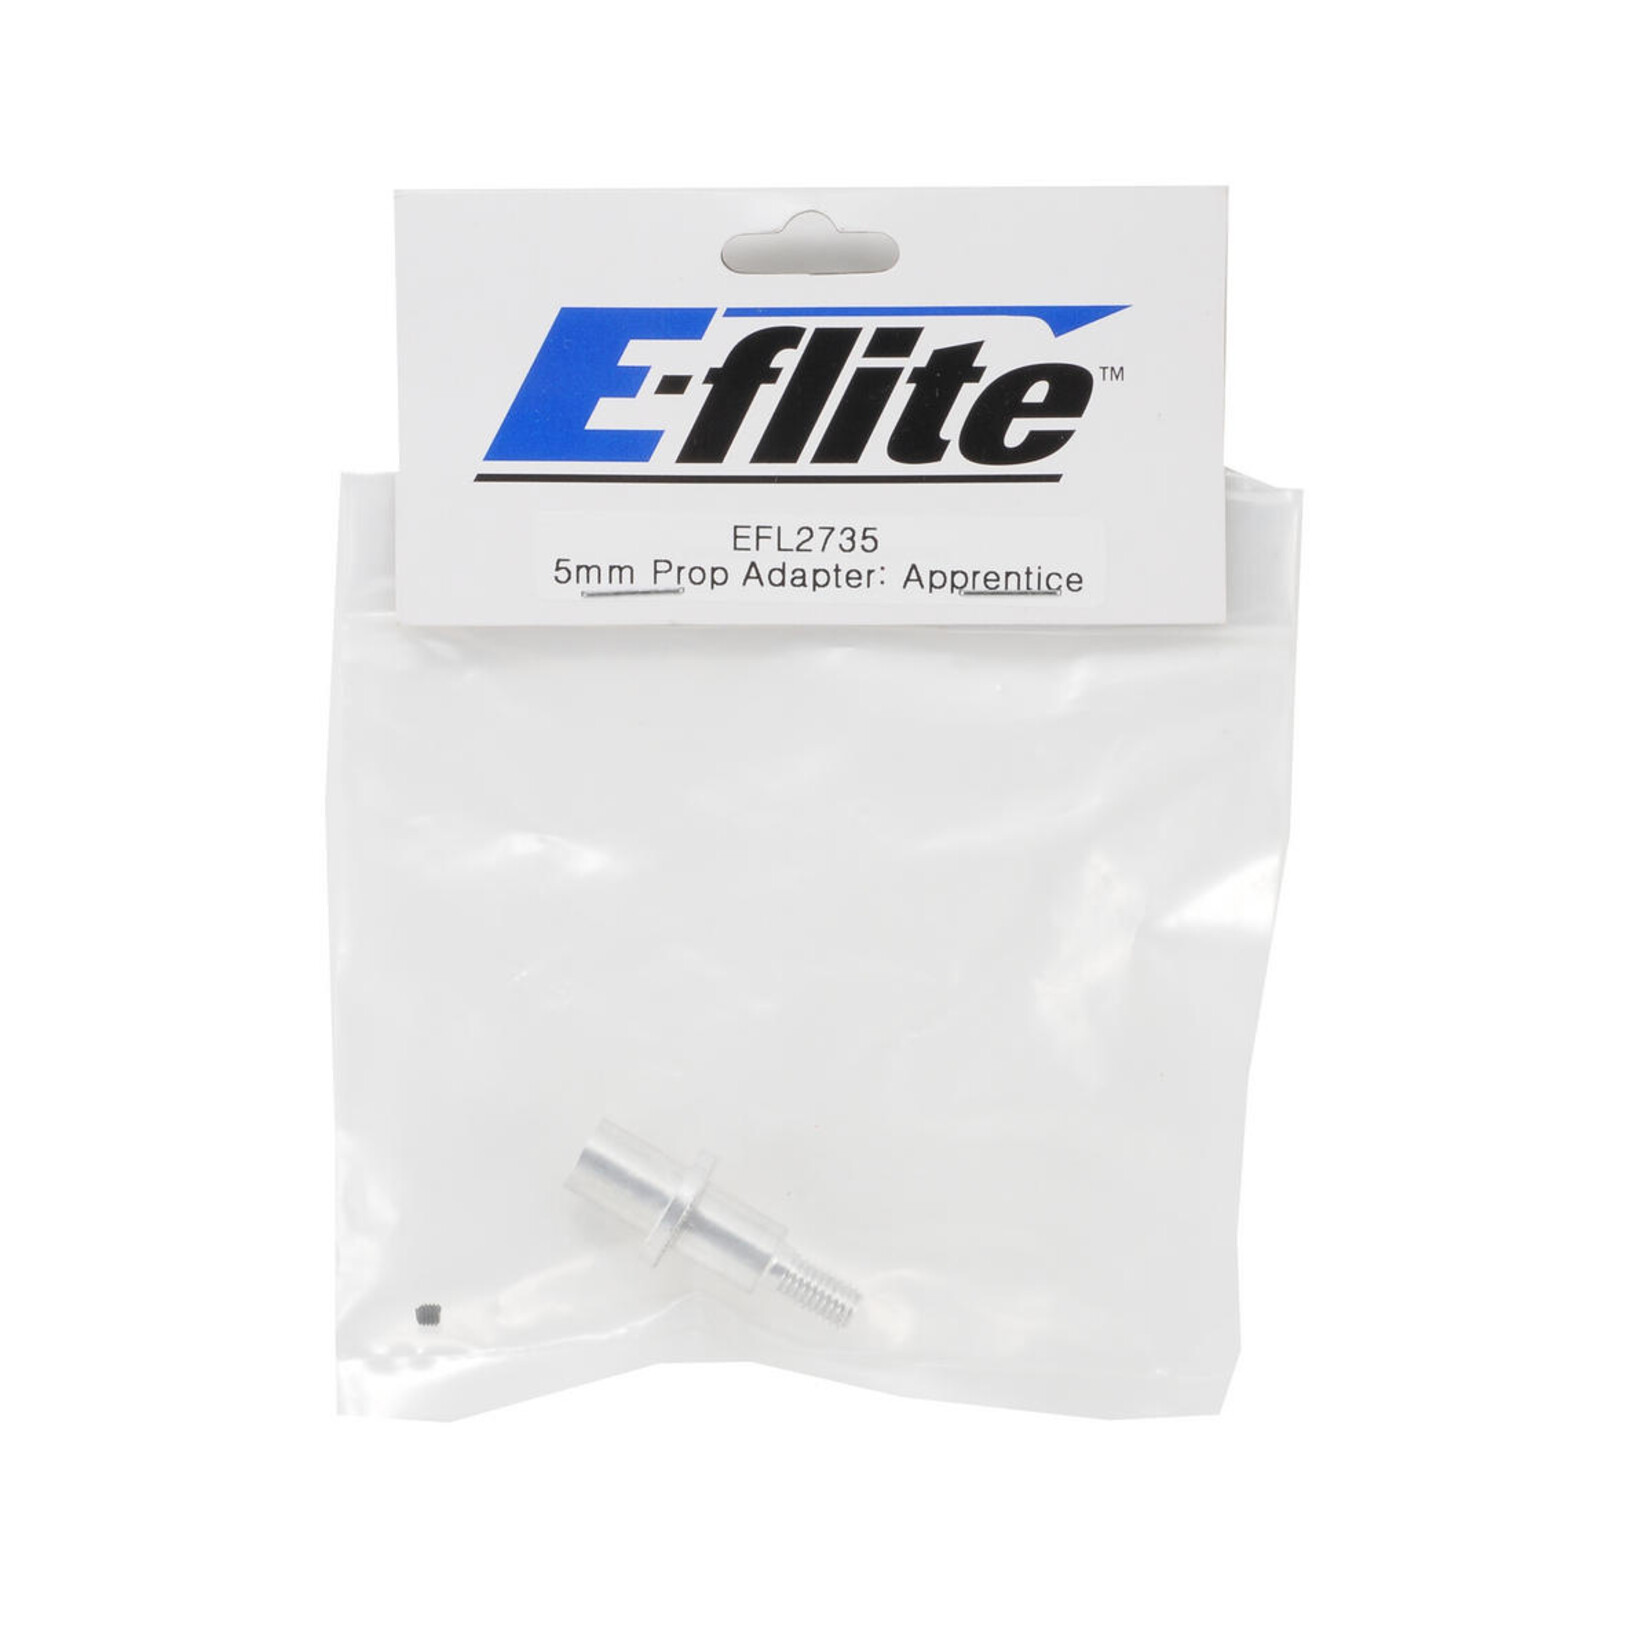 E-flite E-flite 5mm Propeller Adapter #EFL2735